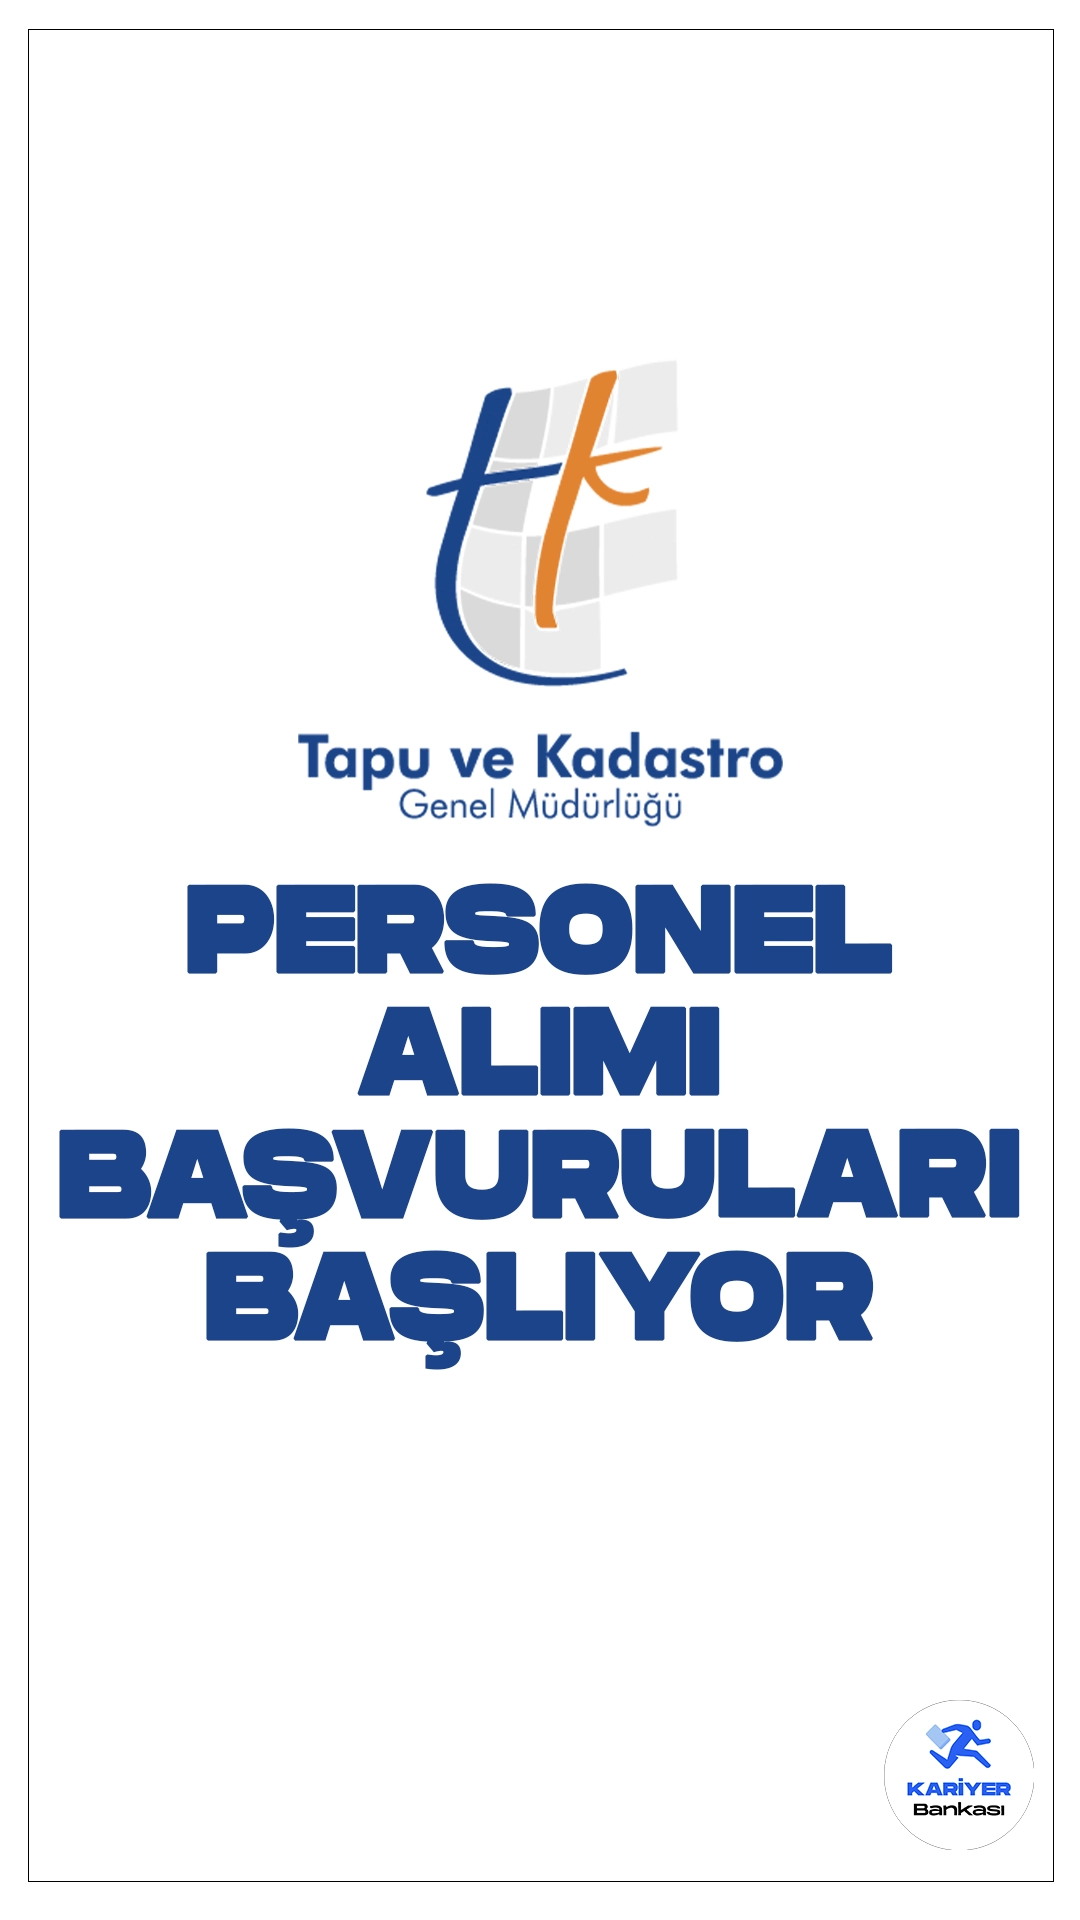 Tapu Kadastro 11 Personel Alımı Başvuruları Başlıyor.Resmi Gazete'de yayımlanan duyuruda, Tapu ve Kadastro Genel Müdürlüğüne sözleşmeli personel alımı yapılacağı aktarılırken, başvuruların 6 Mayıs itibarıyla alınacağı kaydedildi.Başvuru yapacak adayların genel ve özel şartları sağlaması gerekmektedir.